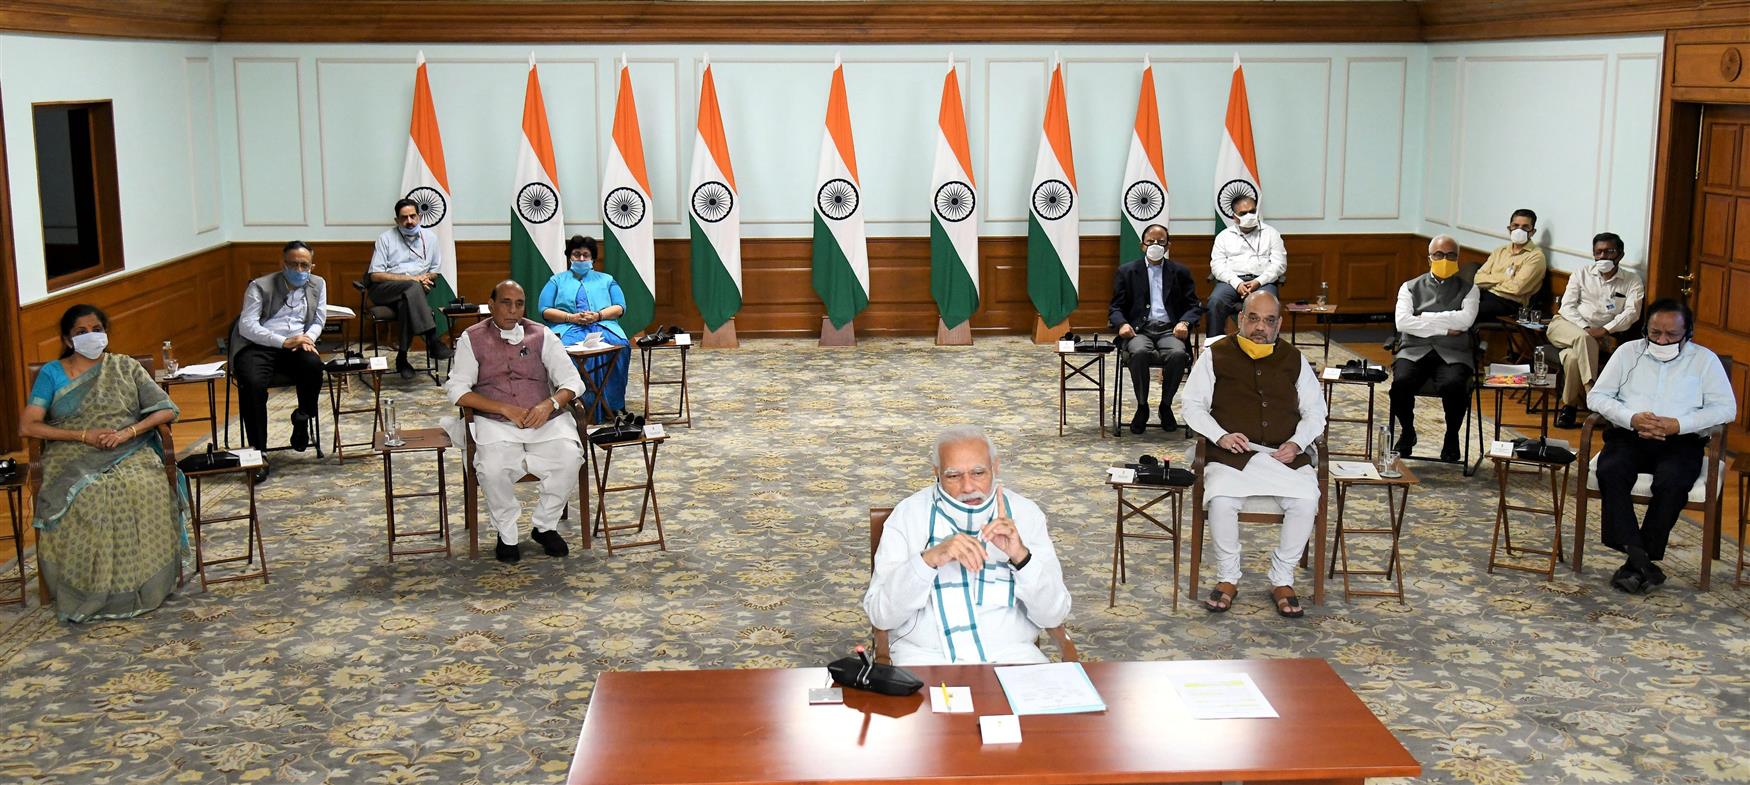 प्रधानमंत्री श्री नरेन्द्र मोदी ने ‘कोविड-19’ से निपटने हेतु आगे की योजना बनाने के लिए मुख्यमंत्रियों के साथ विचार-विमर्श किया